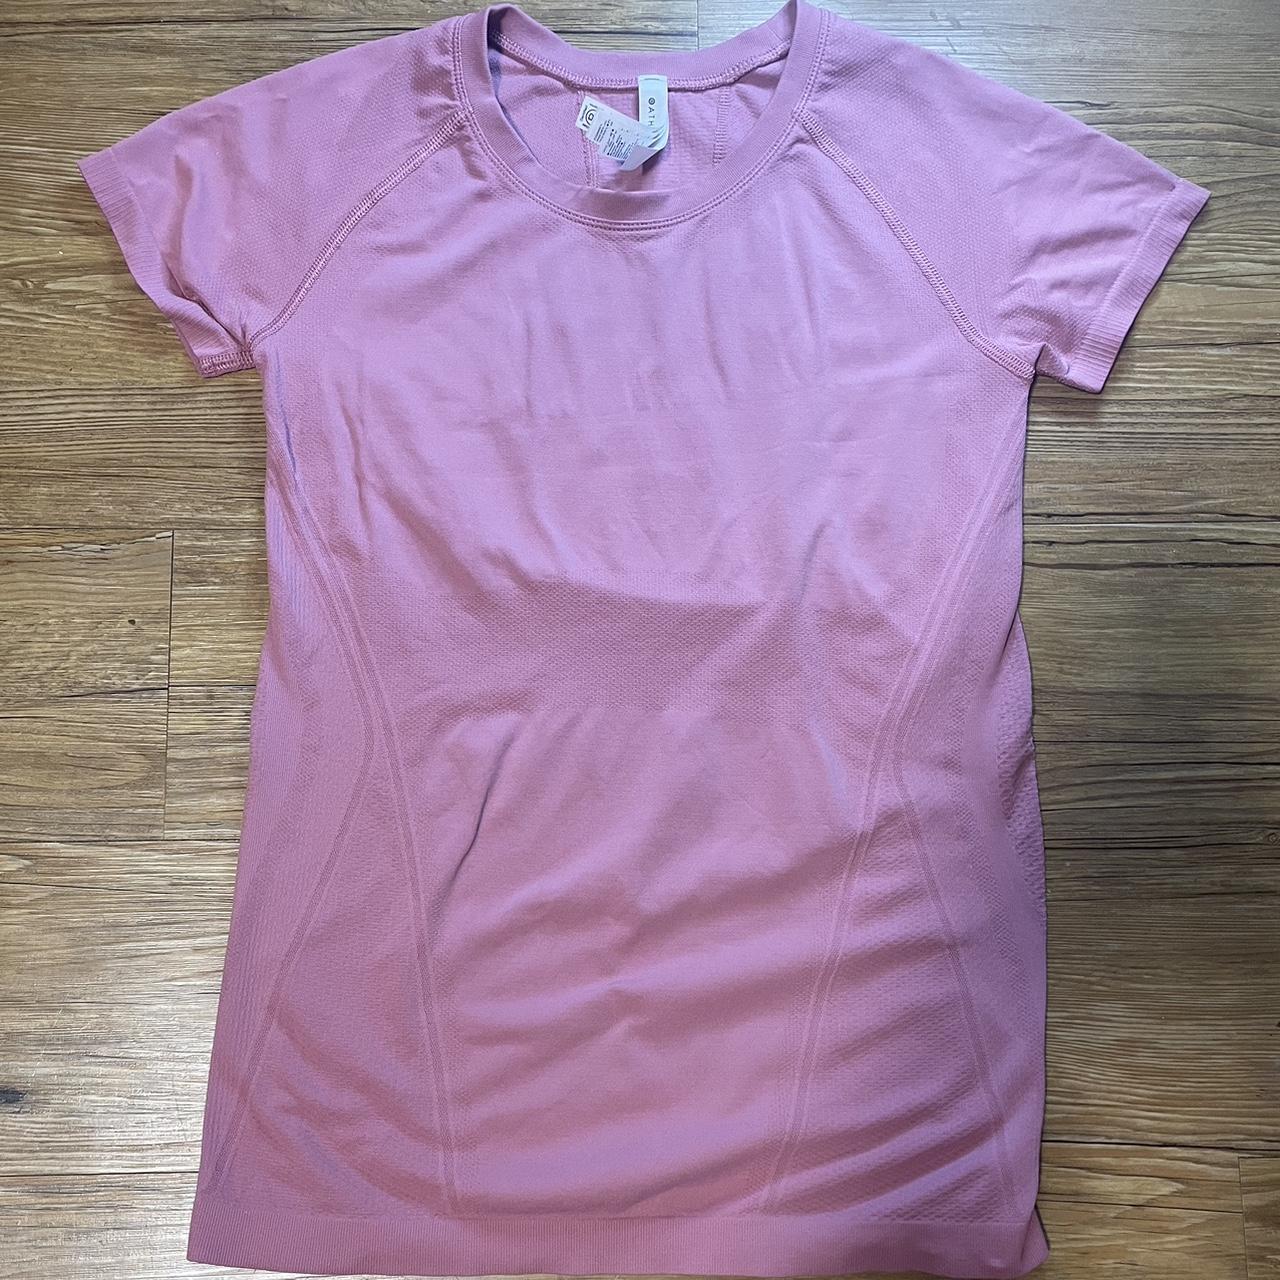 Athleta Women's Pink T-shirt | Depop